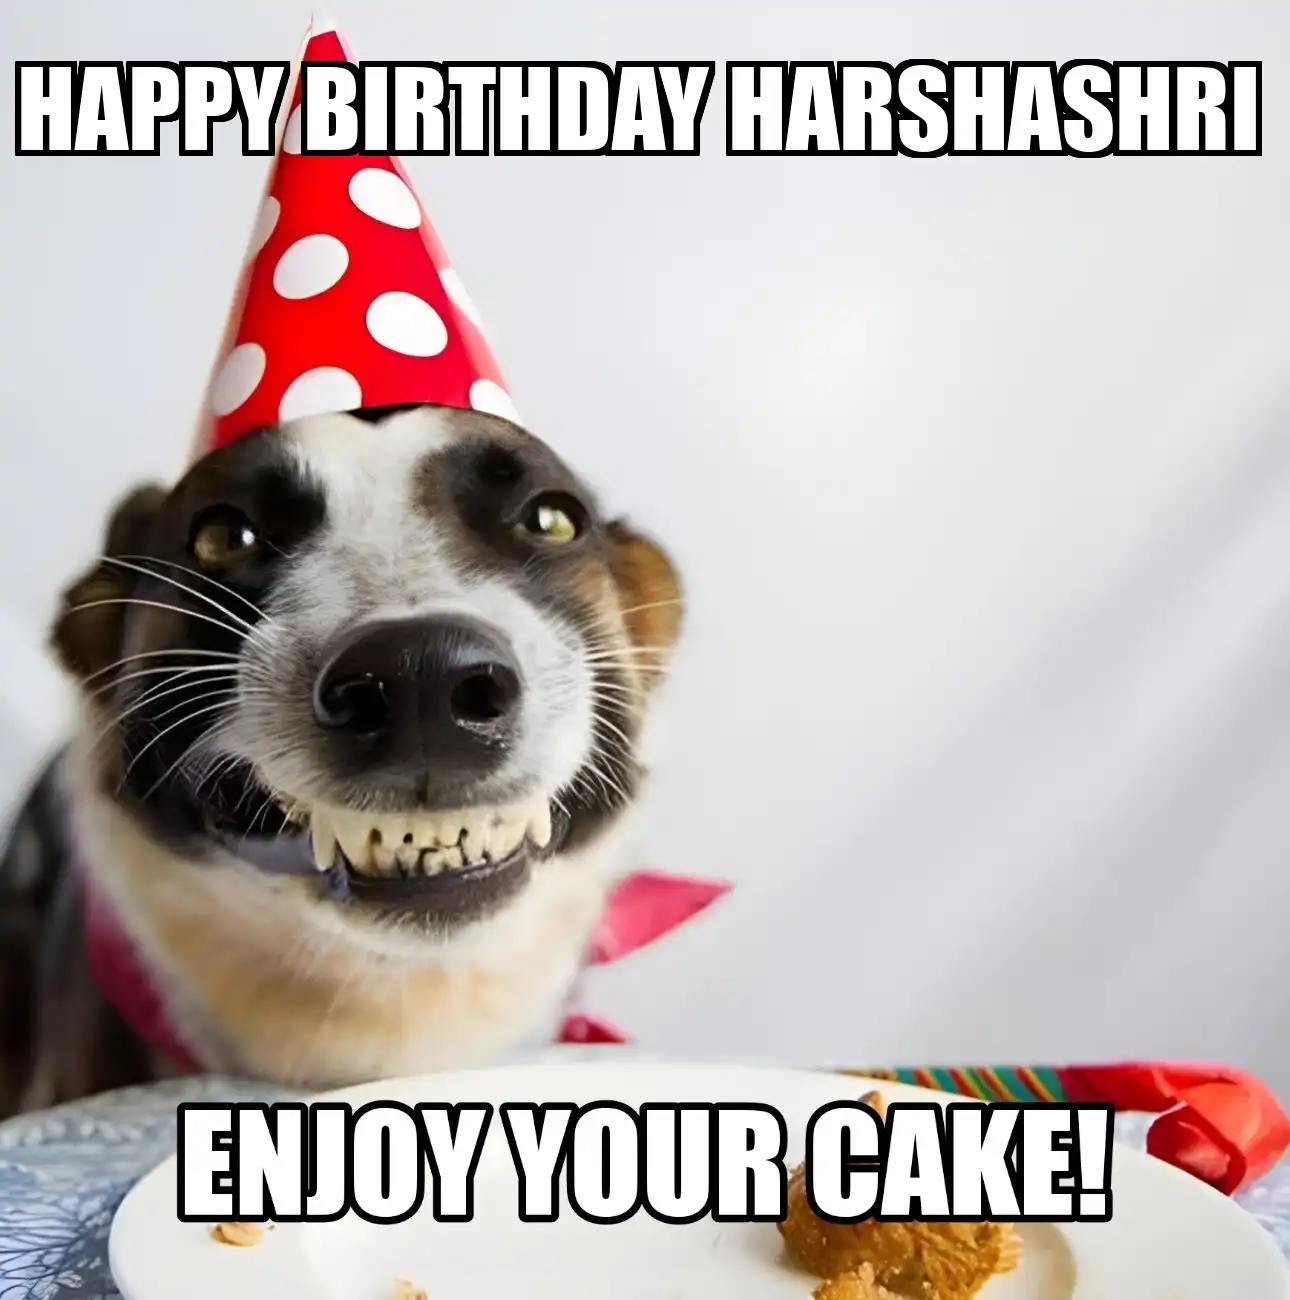 Happy Birthday Harshashri Enjoy Your Cake Dog Meme